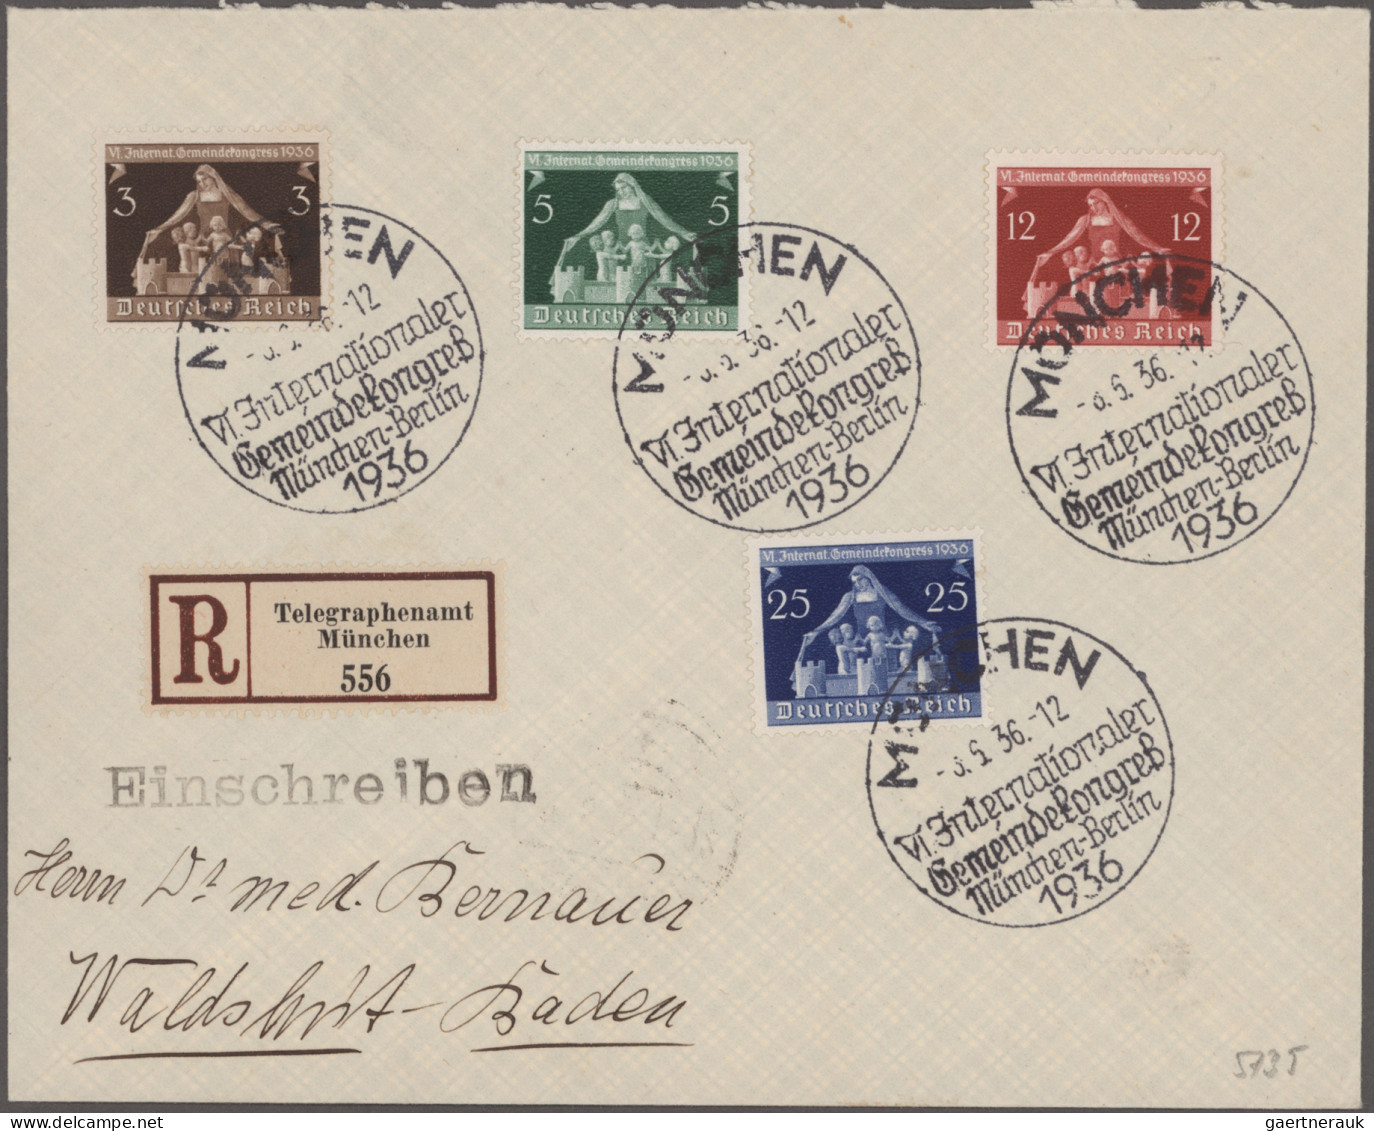 Deutsches Reich - 3. Reich: 1933/1944, saubere Sammlung von 31 Ersttagsbriefen m